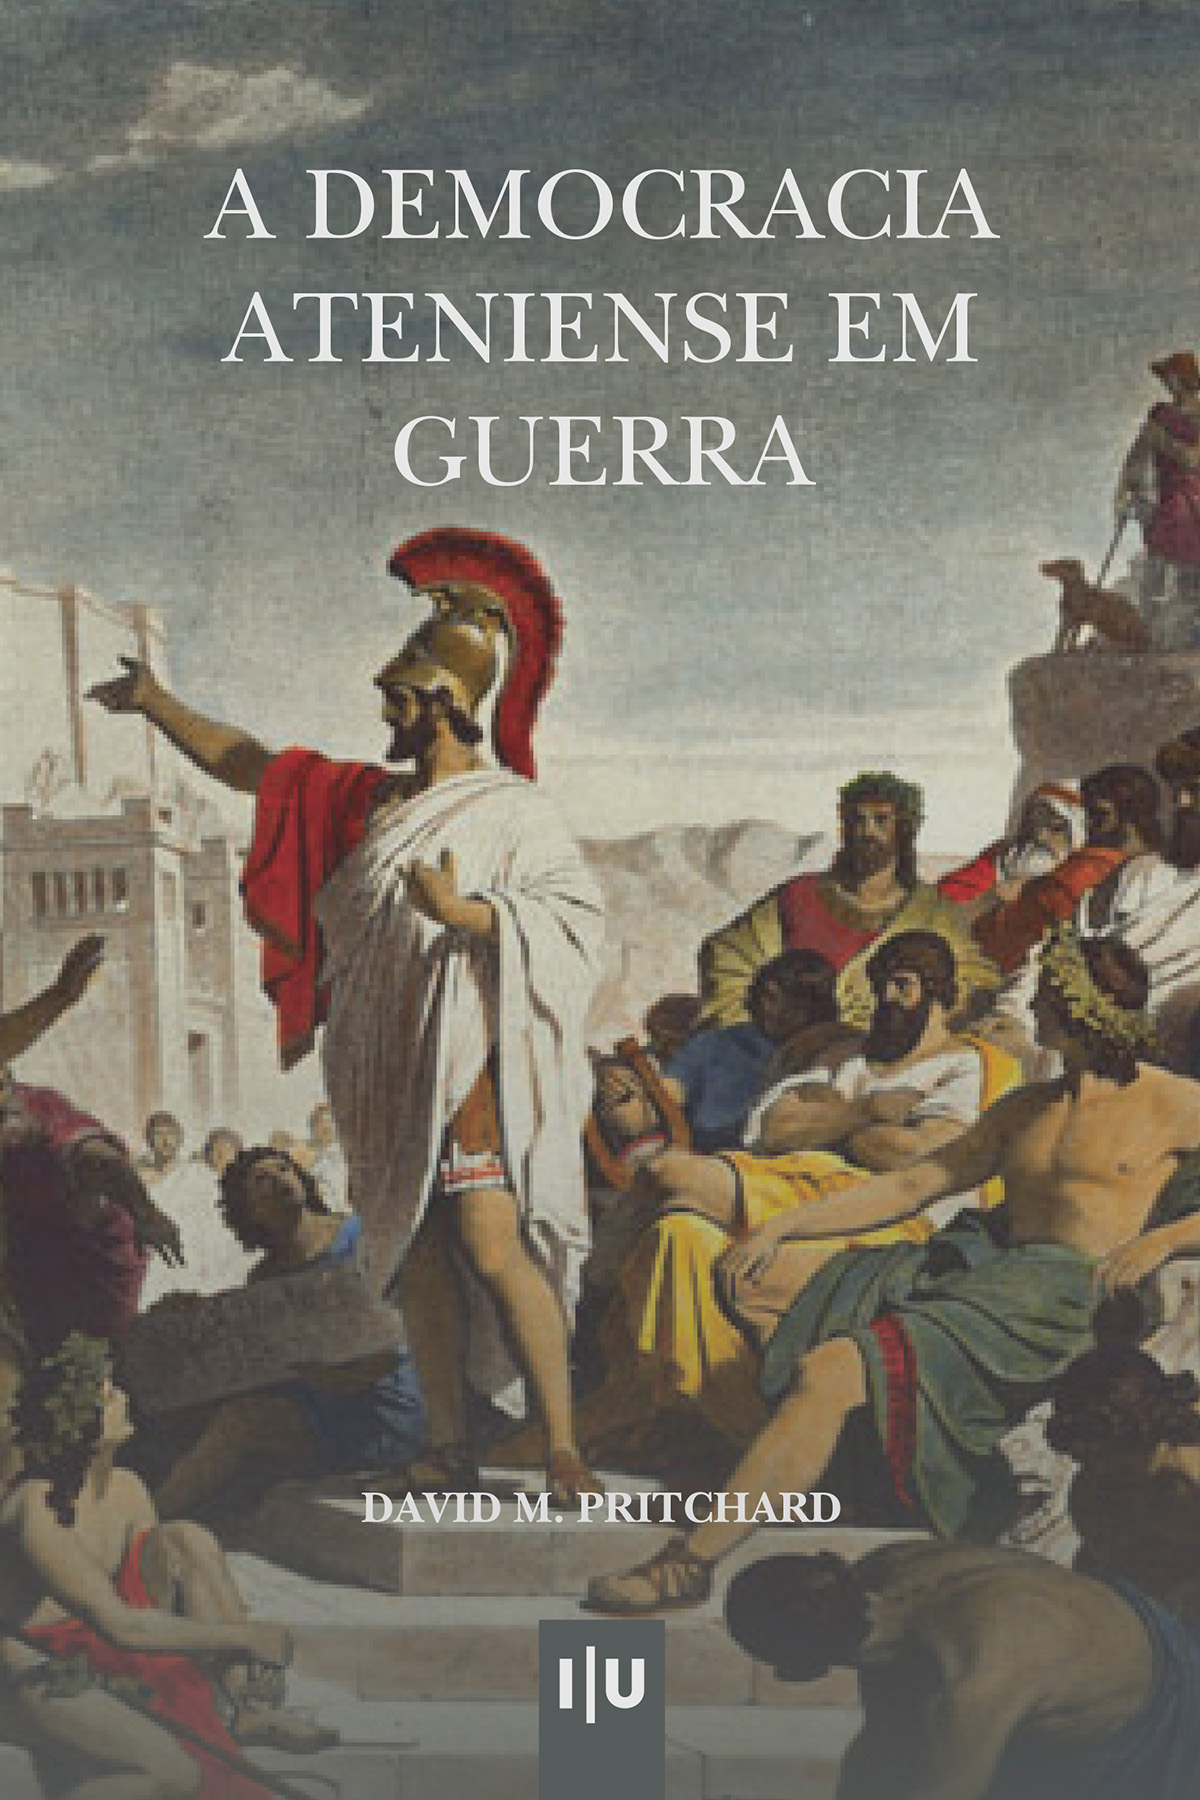 A Democracia Ateniense em Guerra - Imprensa da Universidade de Coimbra (IUC)